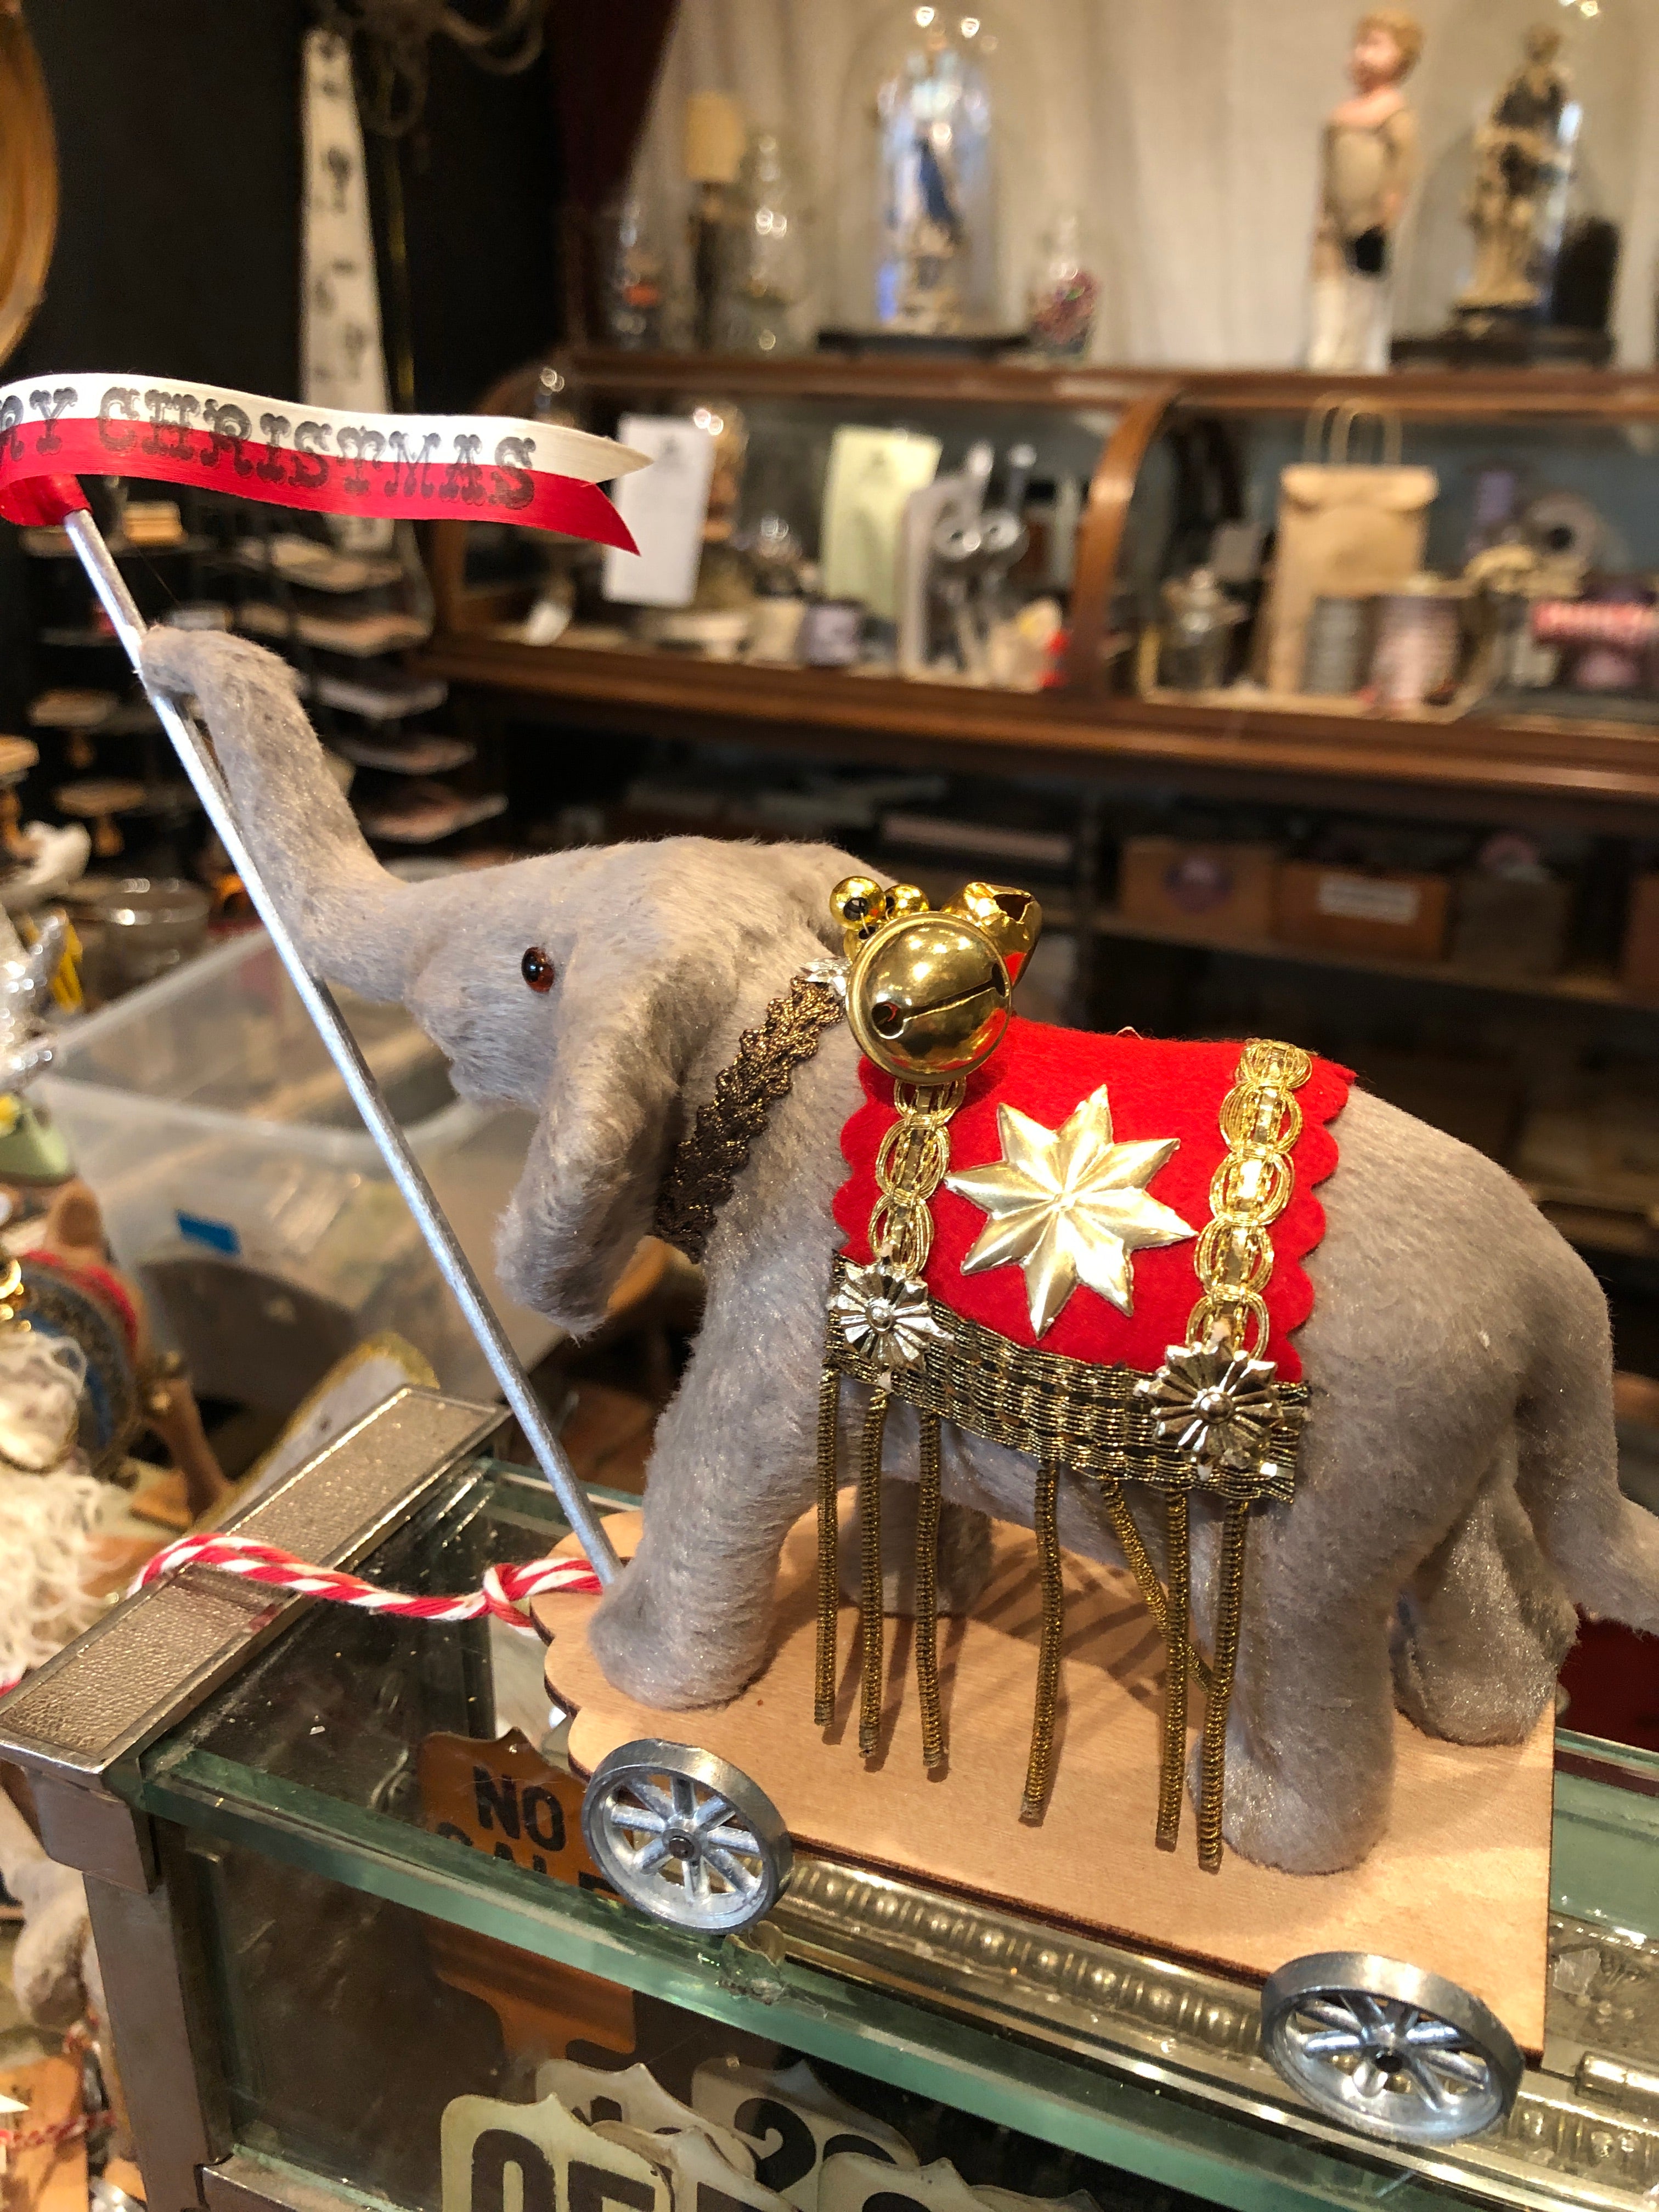 Cirque De Noel Christmas Elephants on Wheels